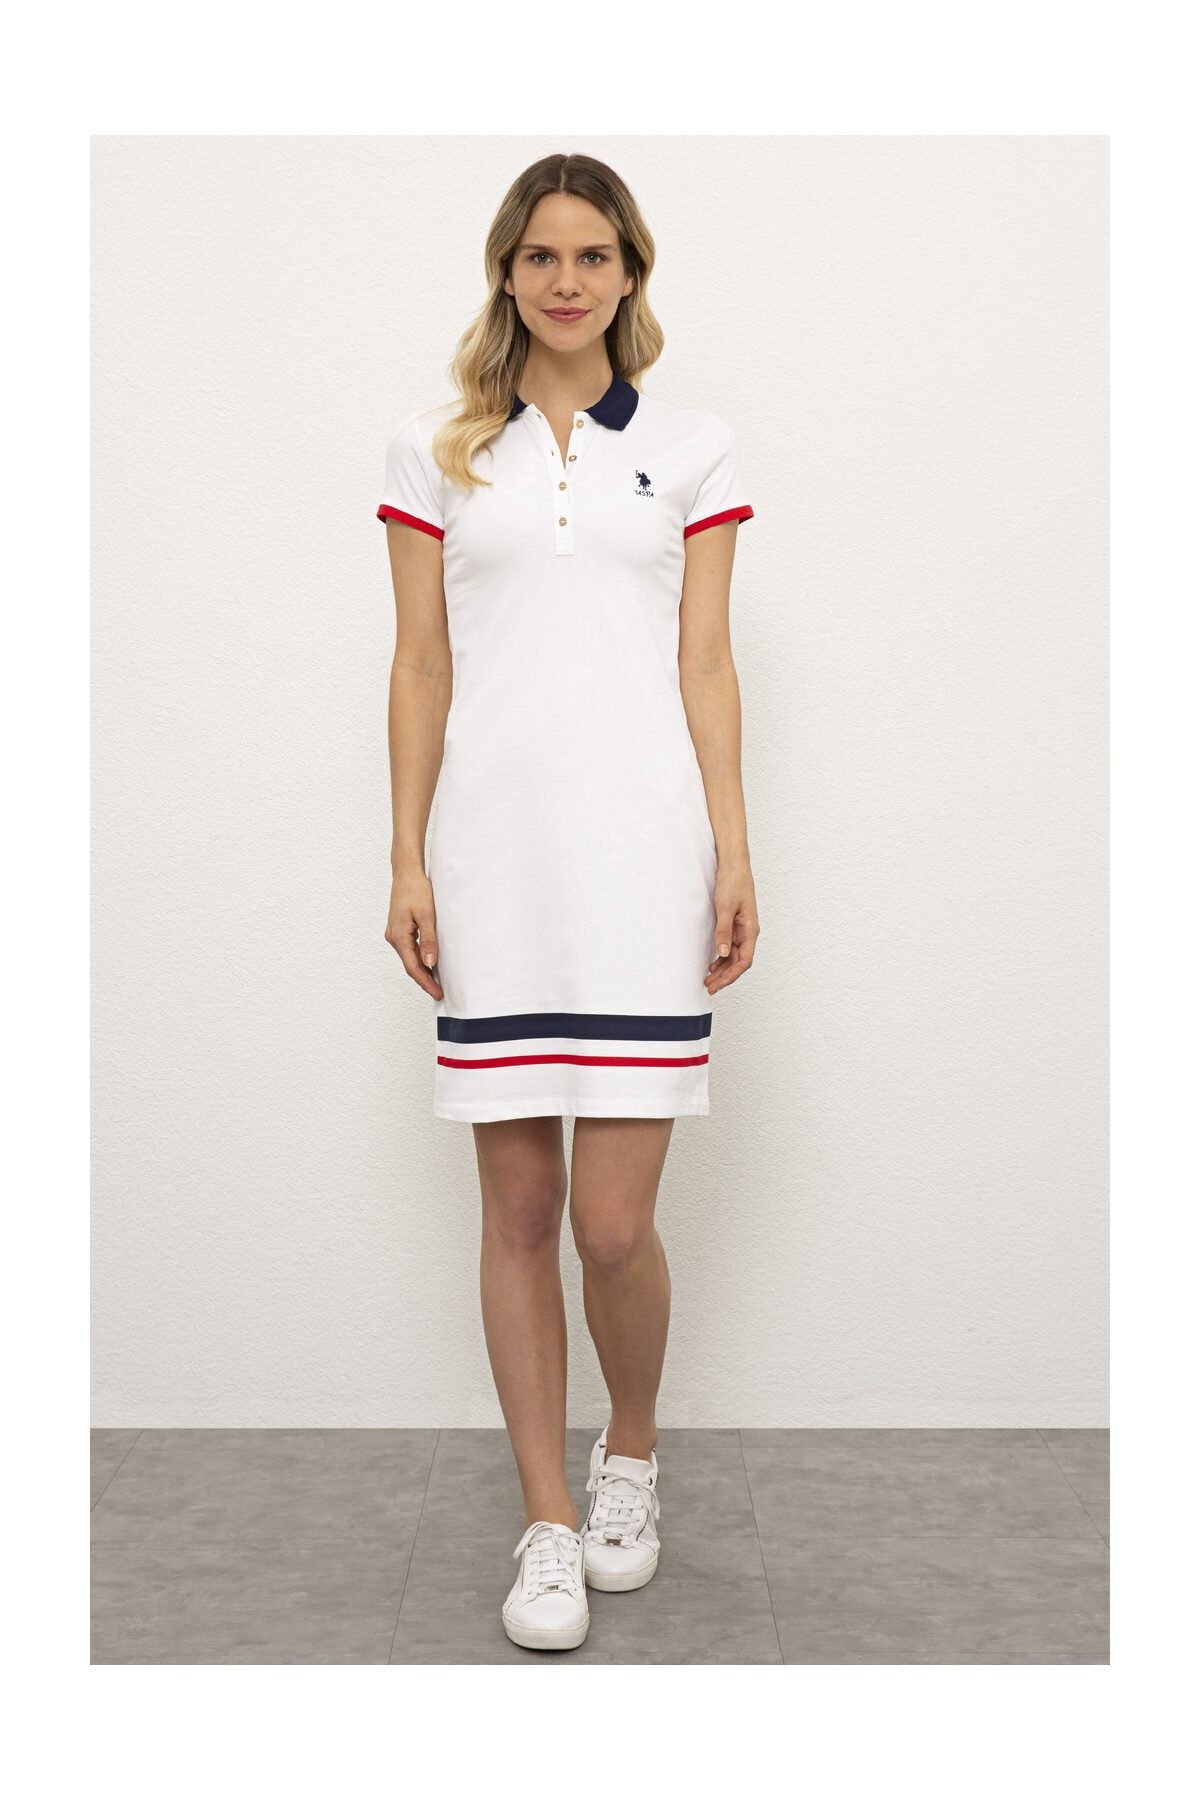 U.S. Polo Assn. Beyaz Kadın Örme Elbise